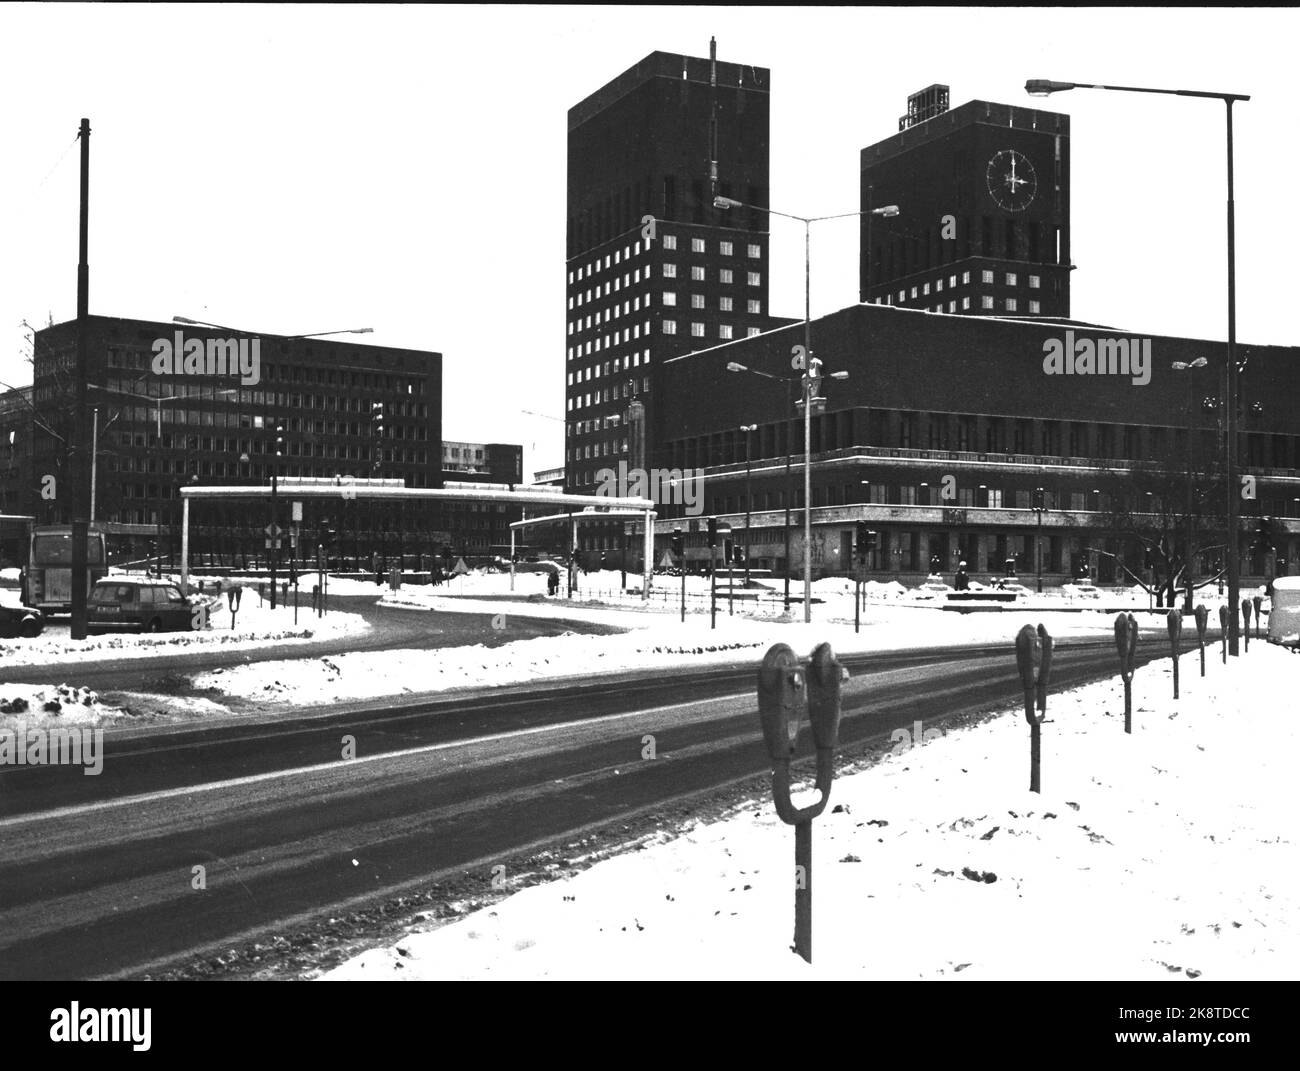 Oslo 19731209. Es gibt eine Ölkrise und ein Fahrverbot an Samstagen und Sonntagen. Dies ist der Rathausplatz am Samstagnachmittag, es gibt keinen Verkehr. Oslo City Hall im Hintergrund. Leere Straßen. Foto: Ivar Aaserud / Current Stockfoto